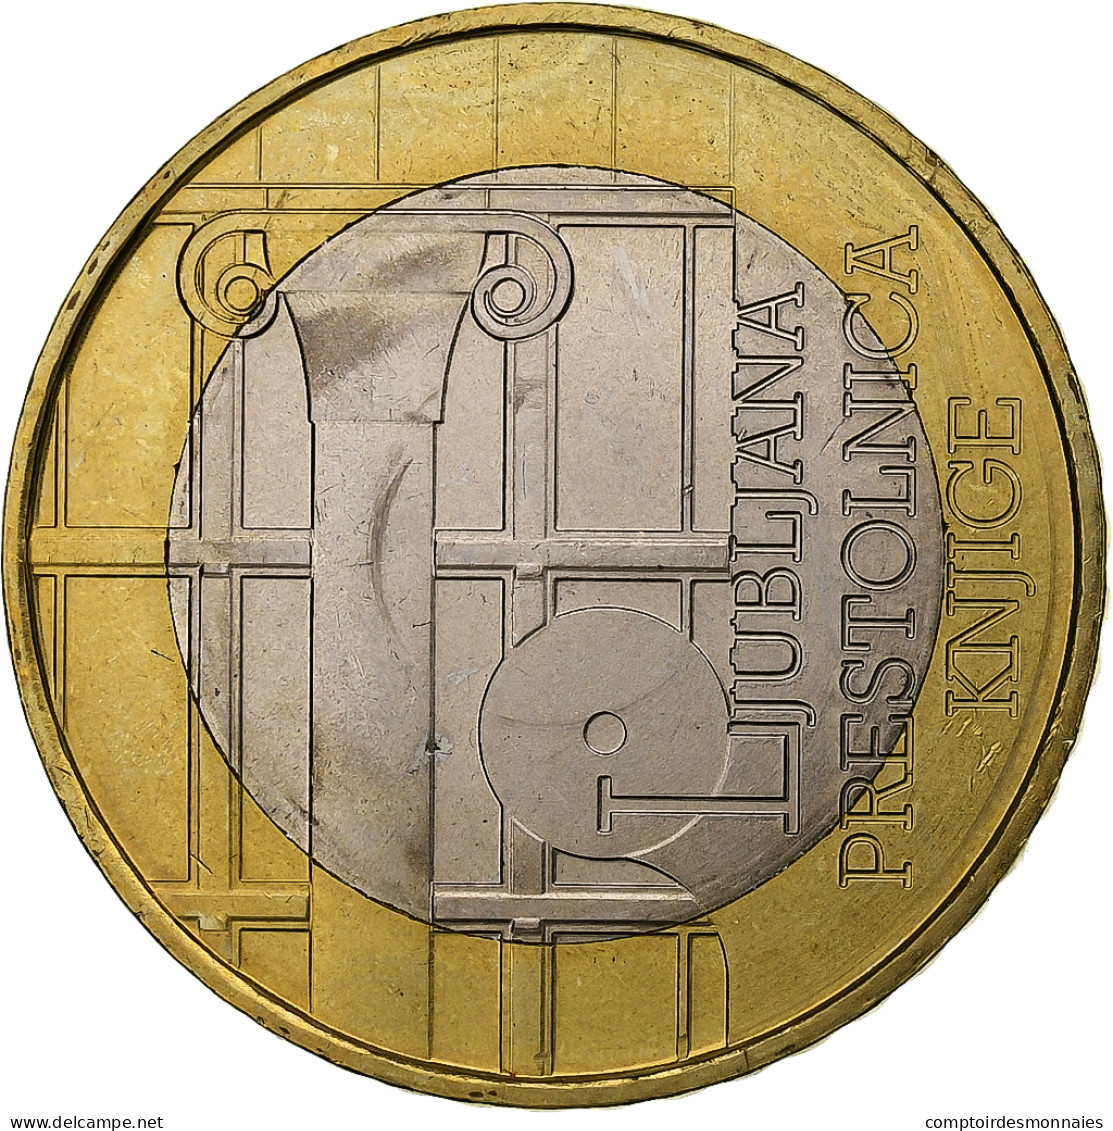 Slovénie, 3 Euro, UNESCO, 2010, SUP, Bimétallique, KM:95 - Slovenia